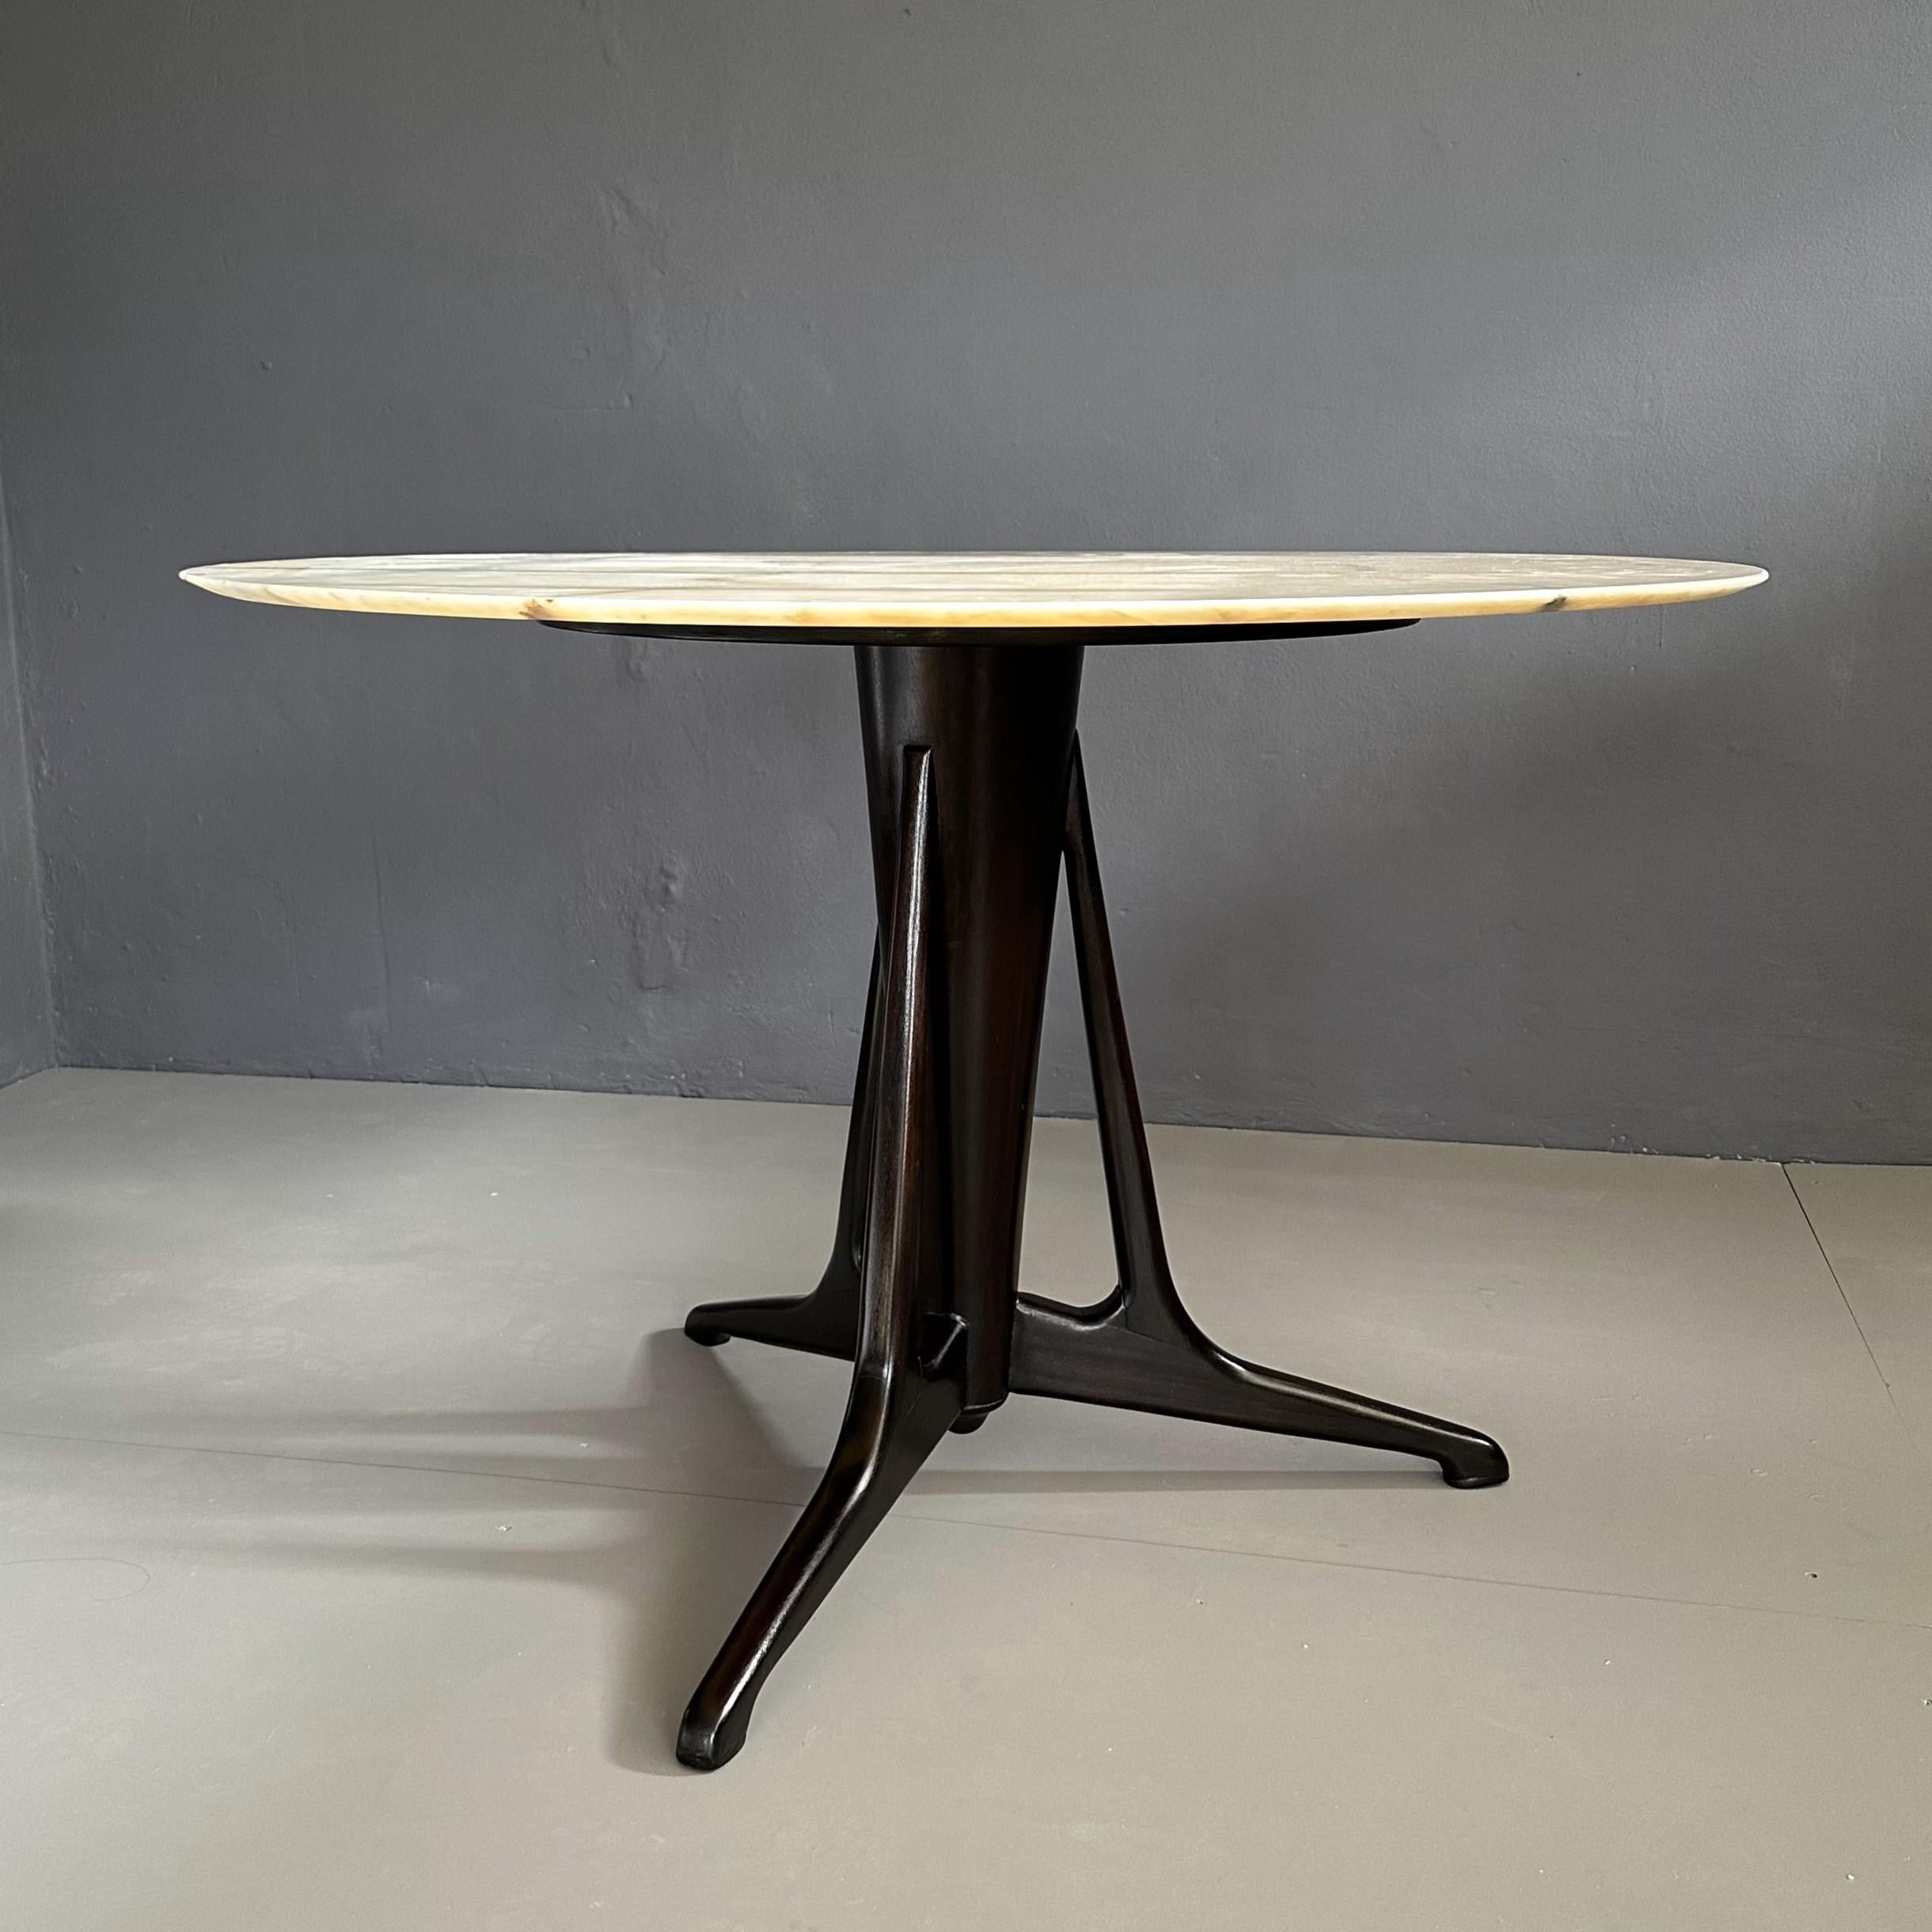 Tavolo rotondo anni Cinquanta, manifattura Italiana, attribuito a Ico Parisi.
Il tavolo ha un diametro di 120 cm con un piano in marmo e una base d'appoggio il legno di mogano.
Il piano e la base d'appoggio sono stati lucidati.
Molto buone le